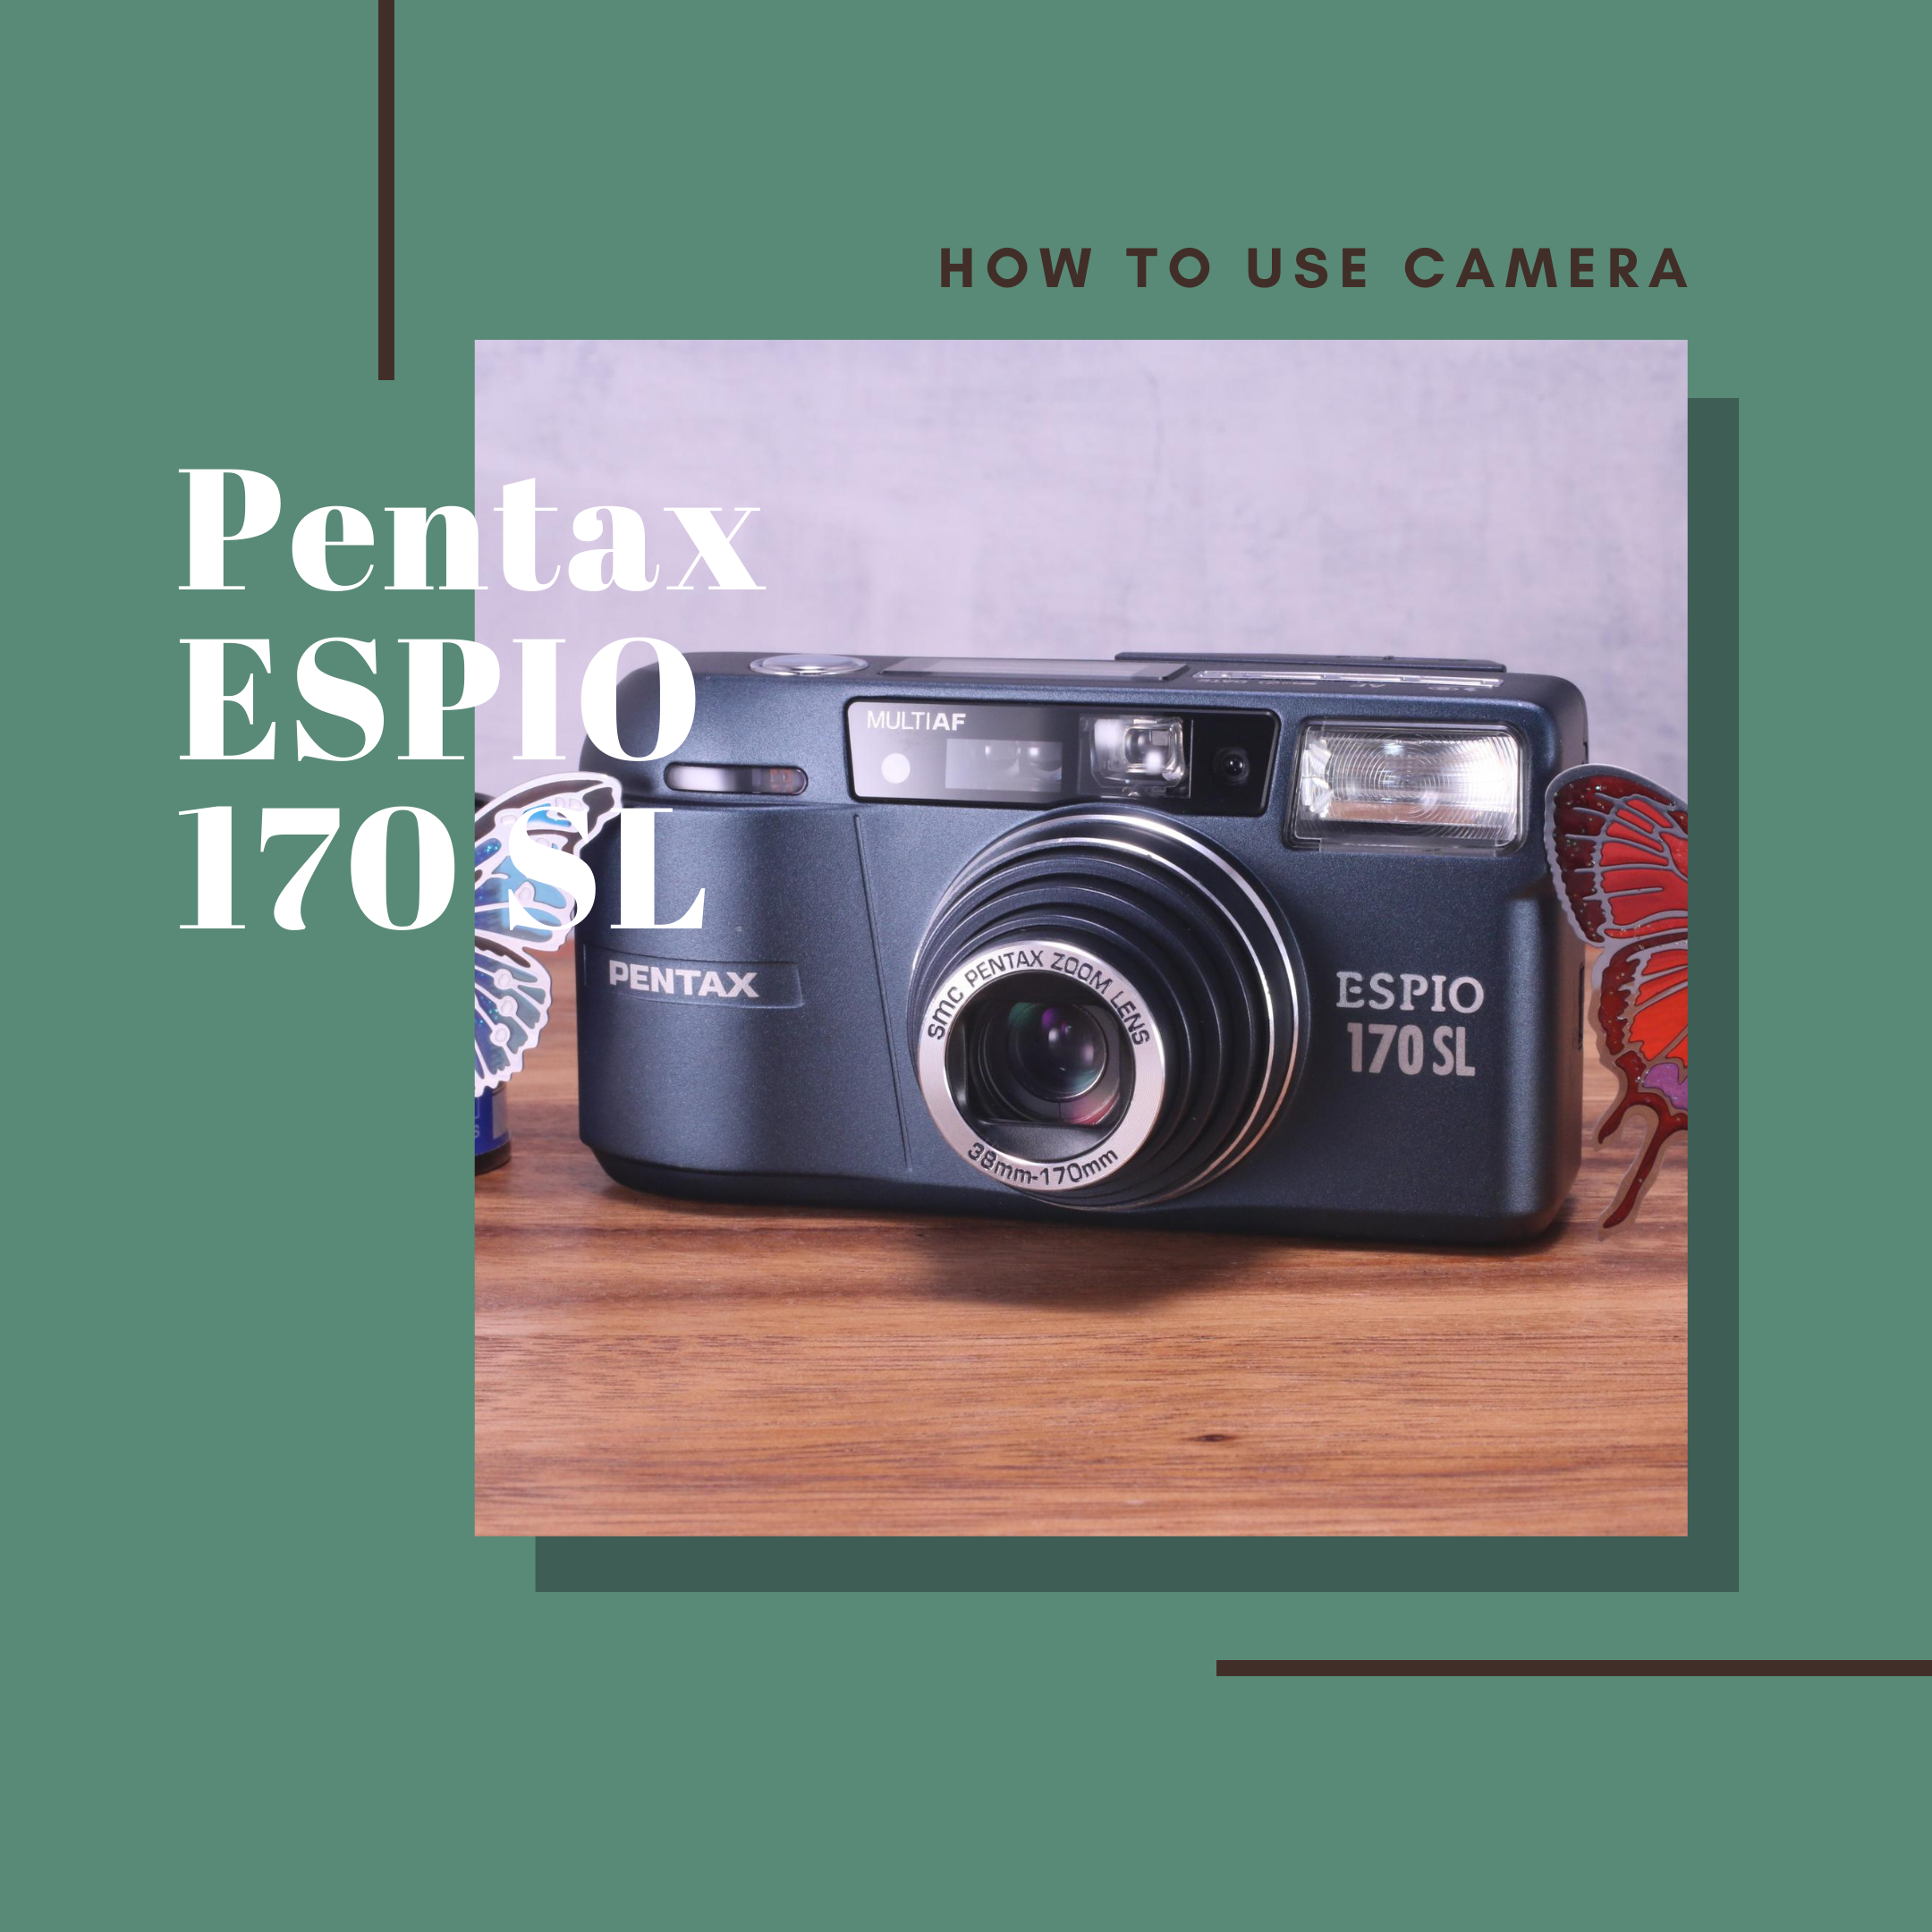 PENTAX ESPIO170SL